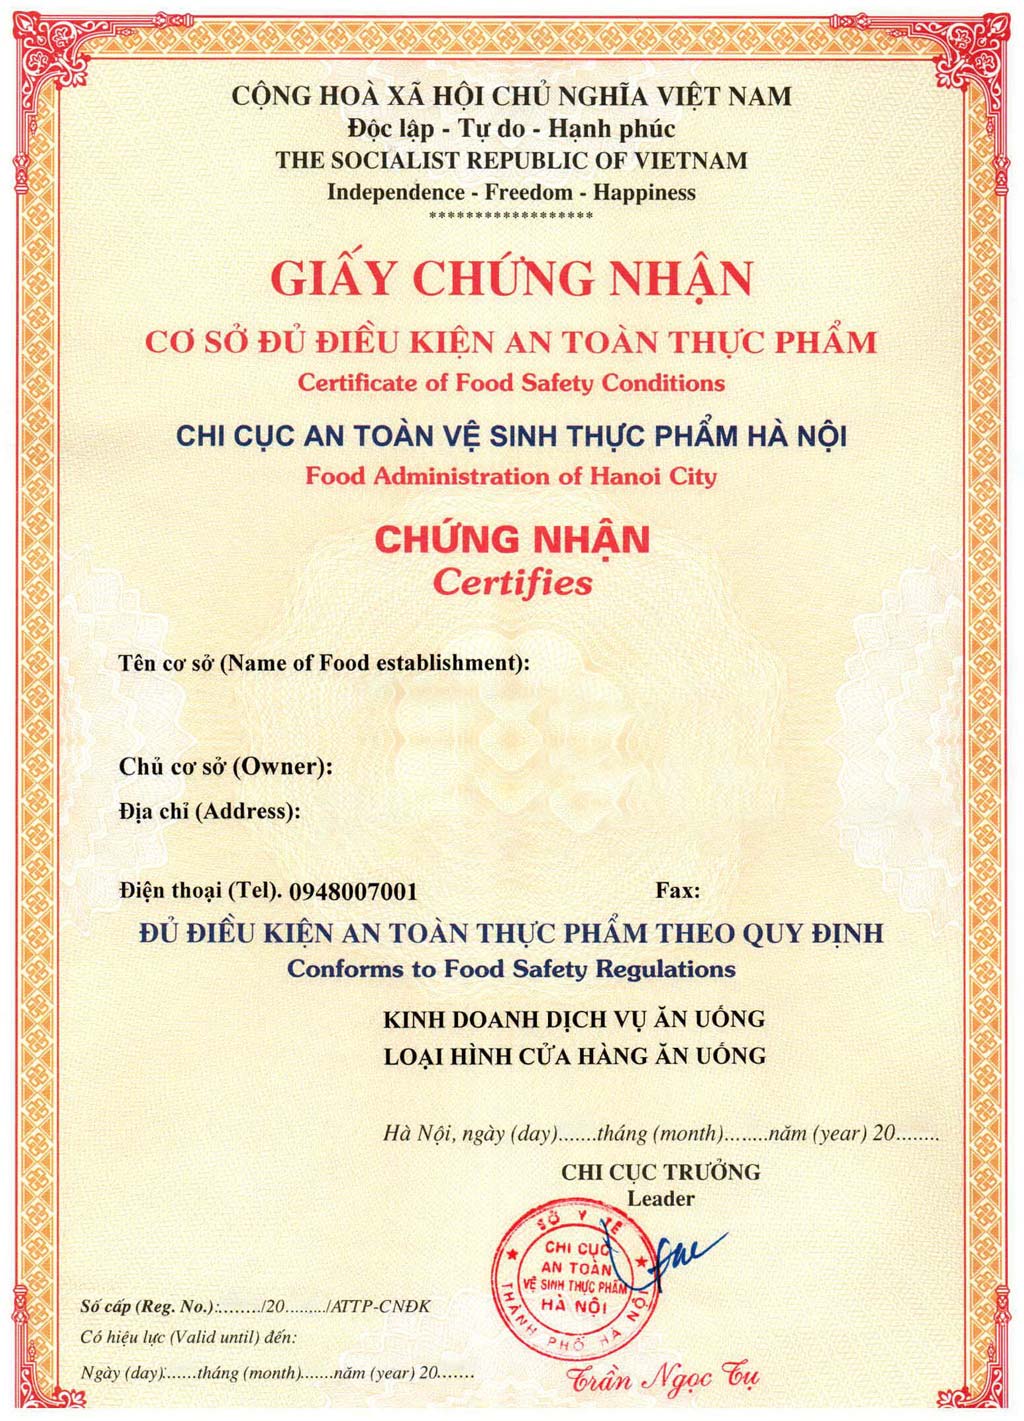 Das Vietnam-Zertifikat für Lebensmittelhygiene und -sicherheit ist ein Zertifikat, das bescheinigt, dass ein Lebensmittelverarbeitungsbetrieb unter der Zensur der zuständigen Behörden in Vietnam qualifiziert ist.